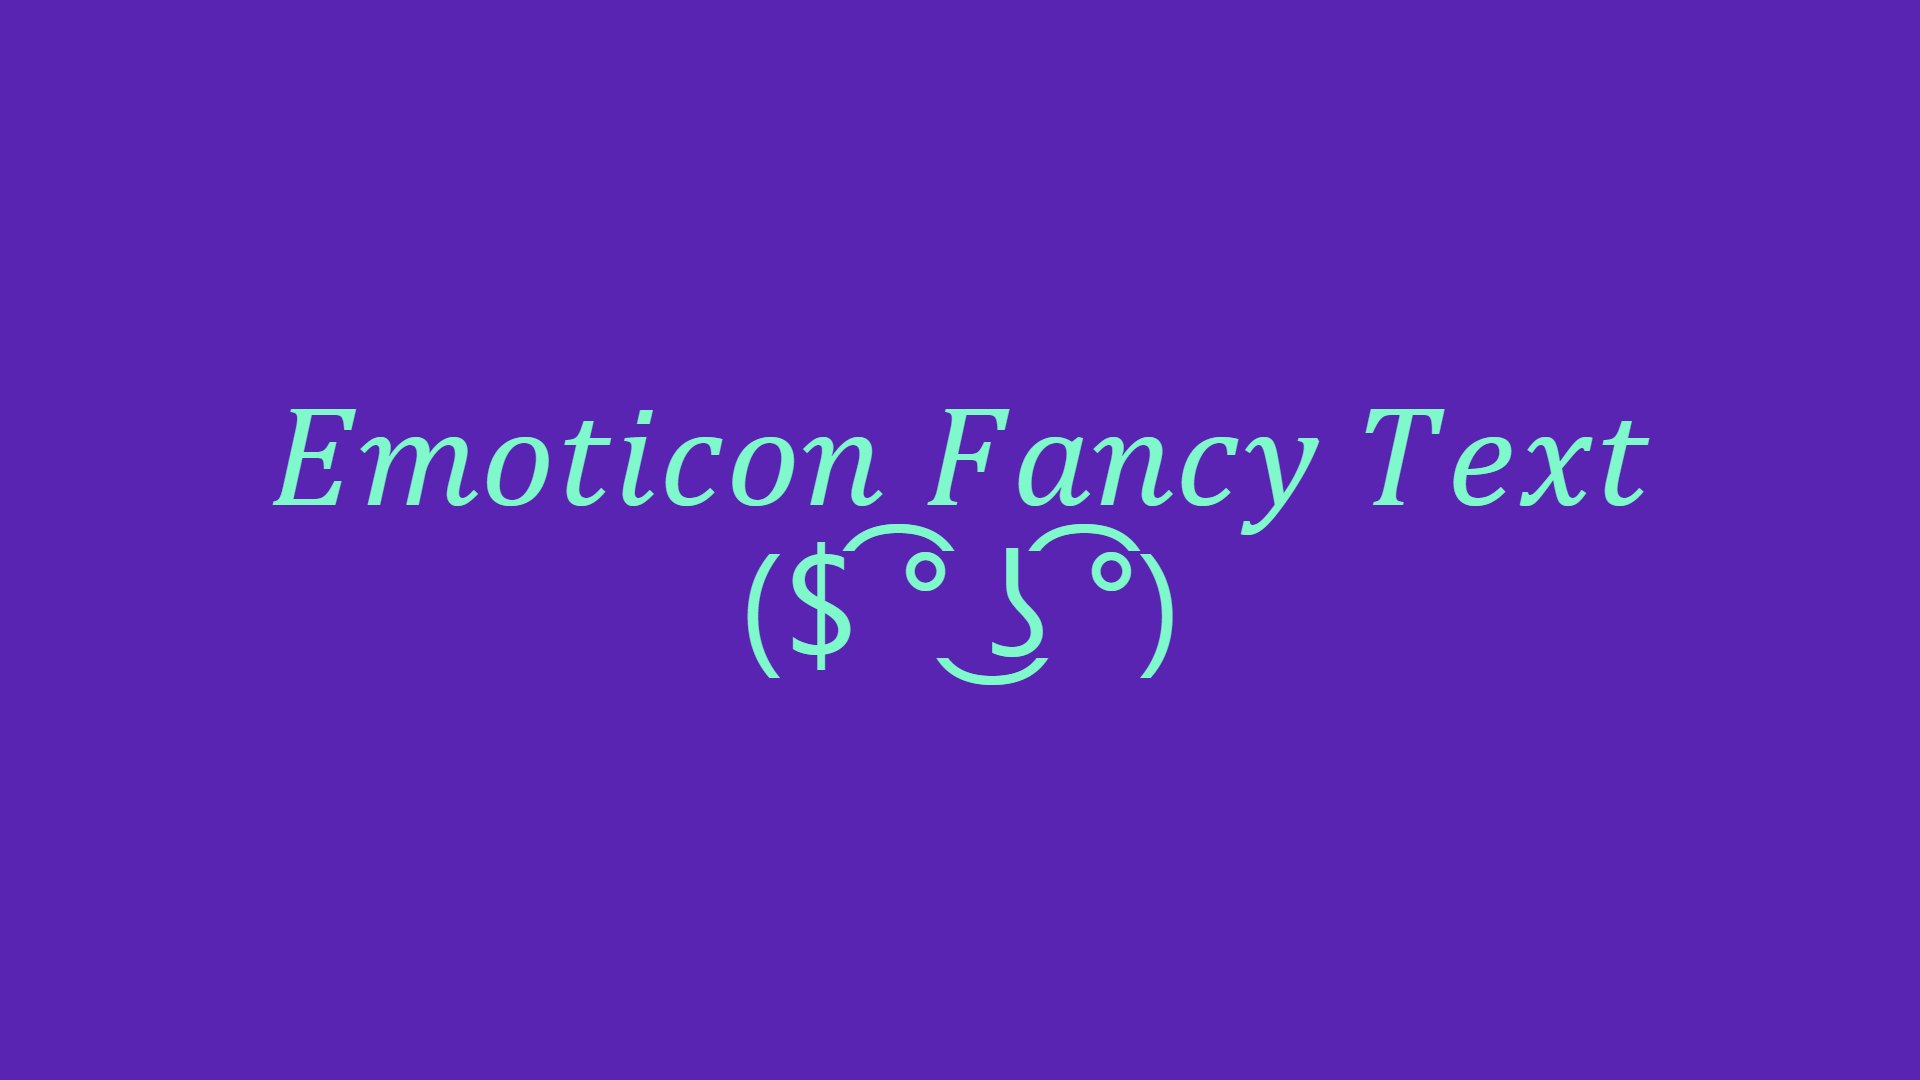 Emoticon Fancy Text Generator